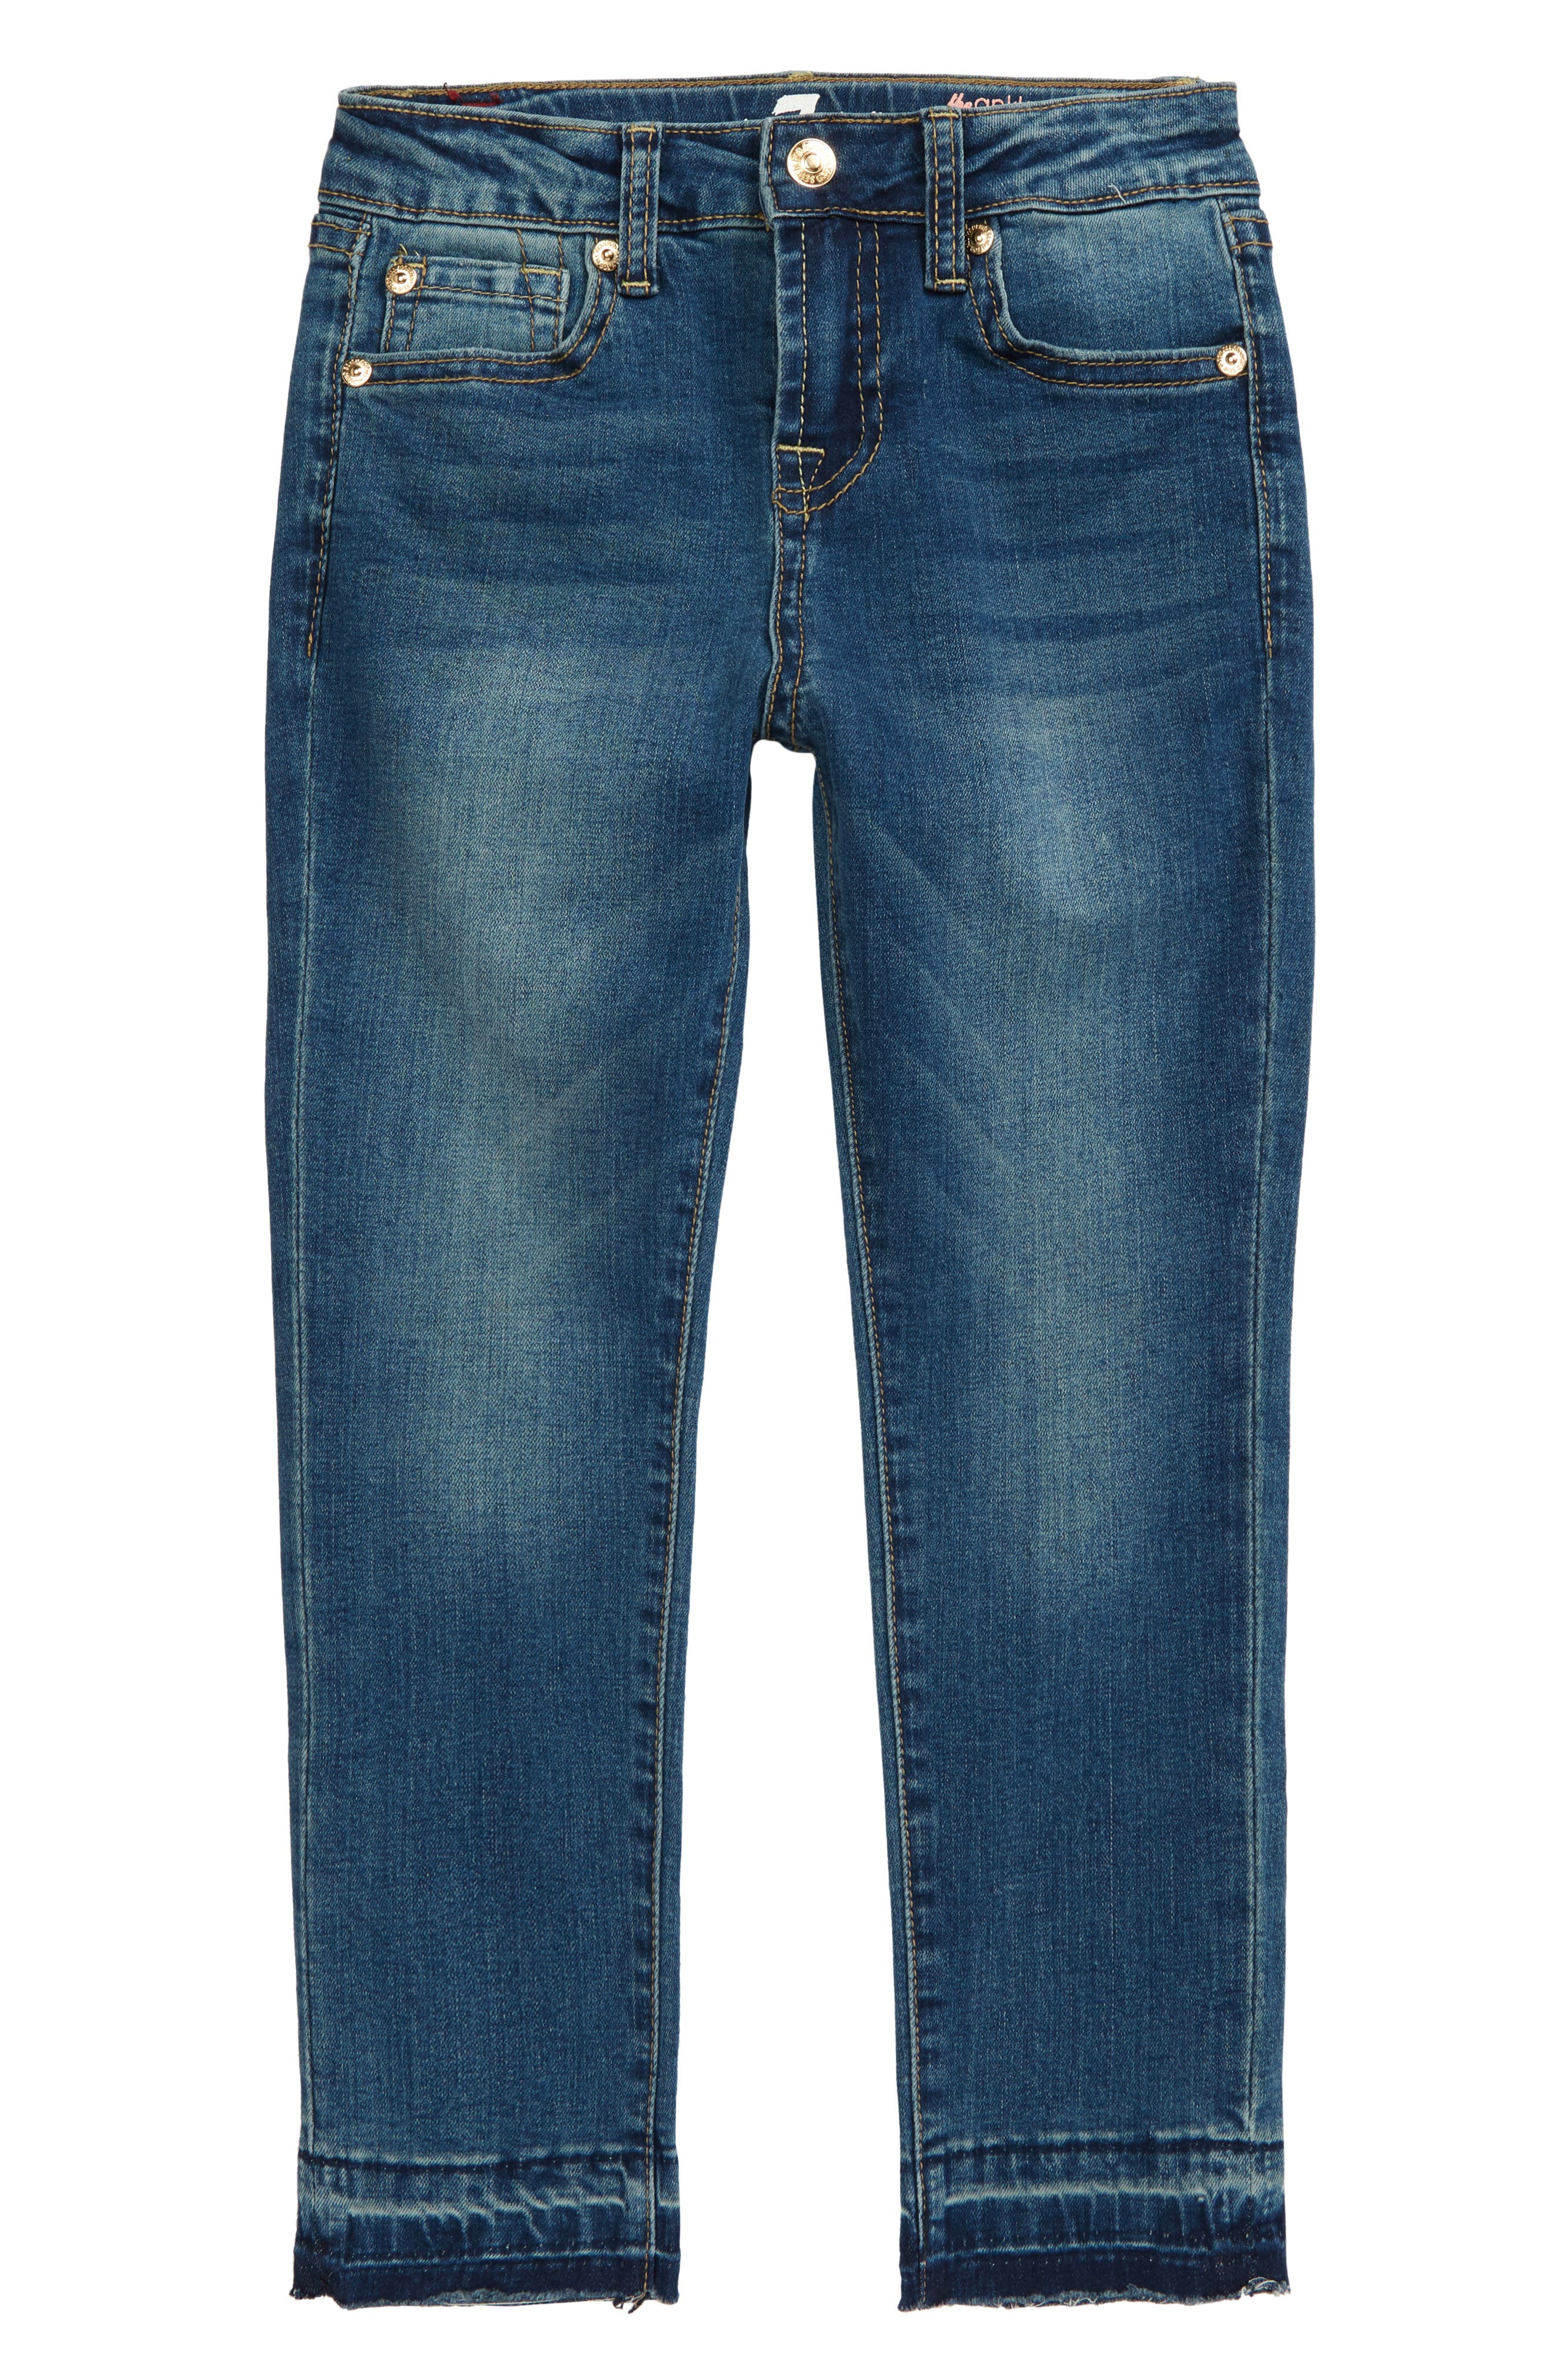 nordstrom rack jeans sale